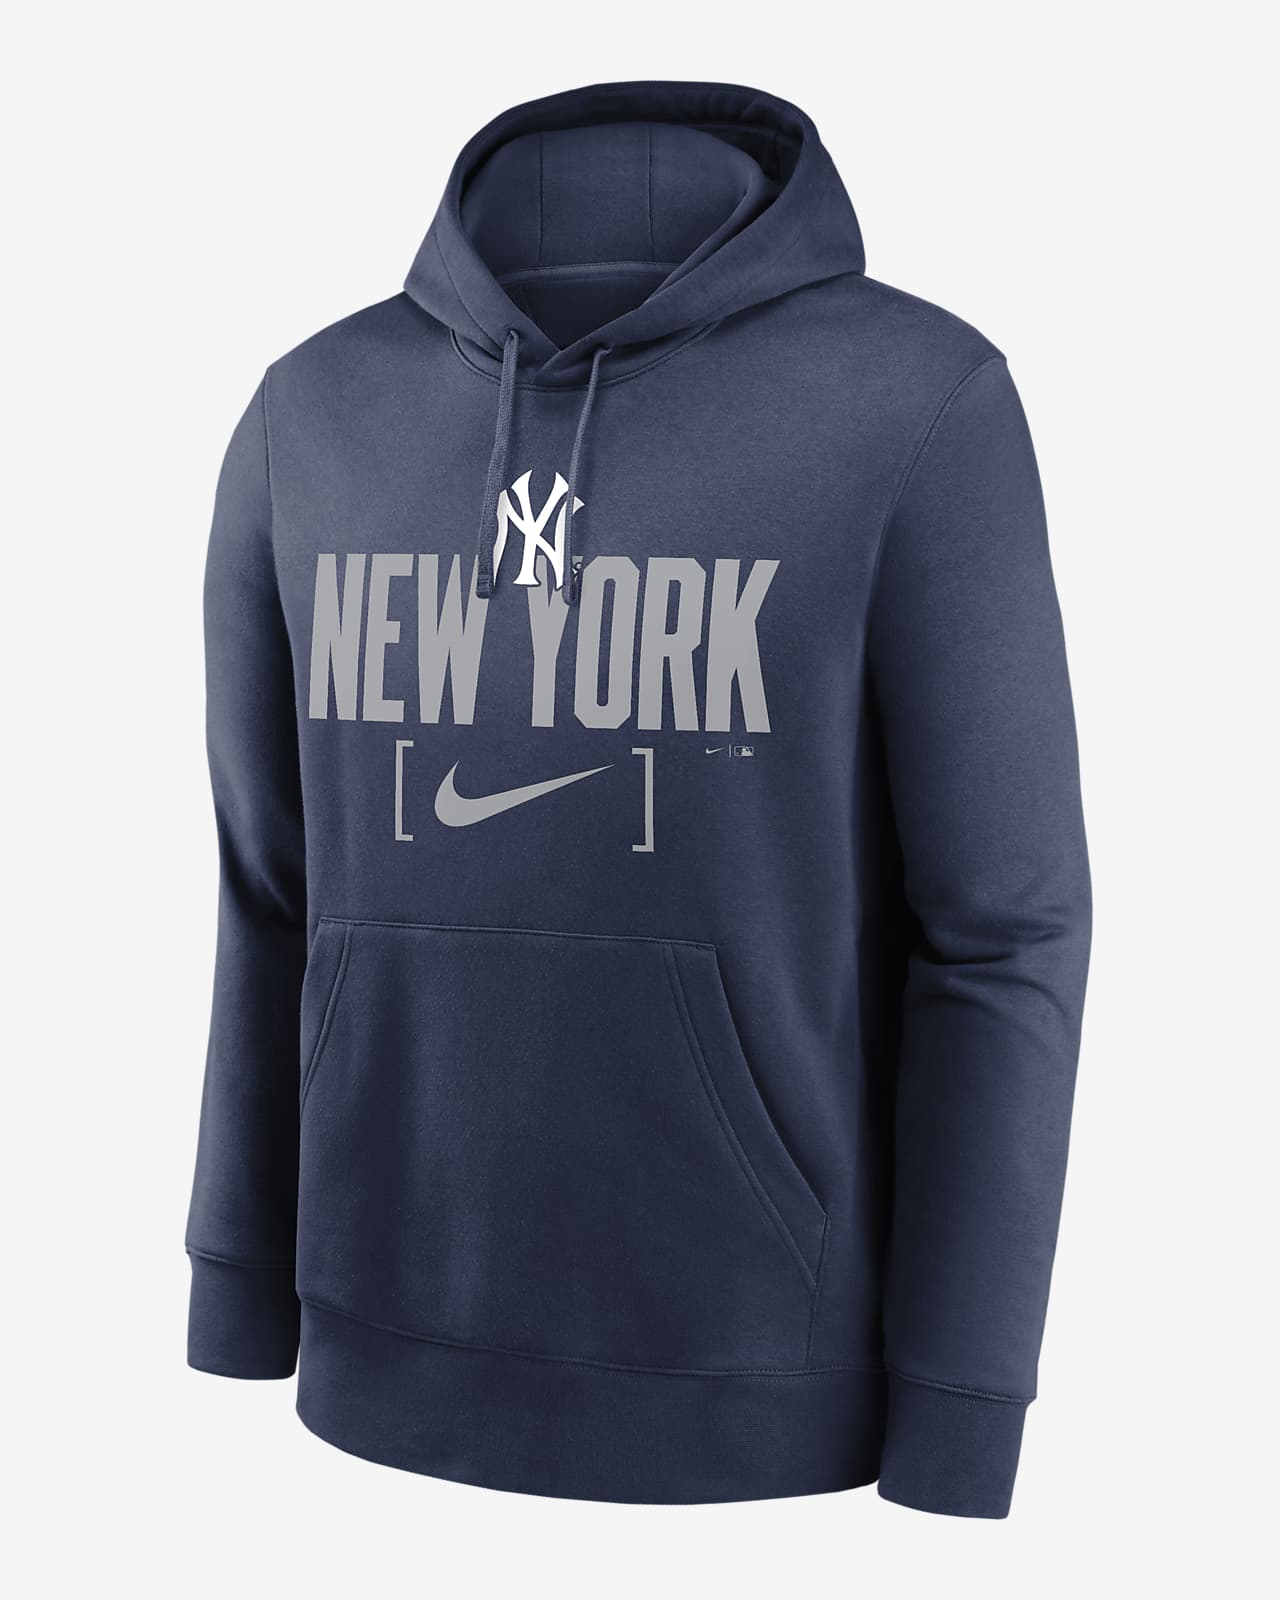 New York Yankees Club Slack Men's Nike MLB Pullover Hoodie